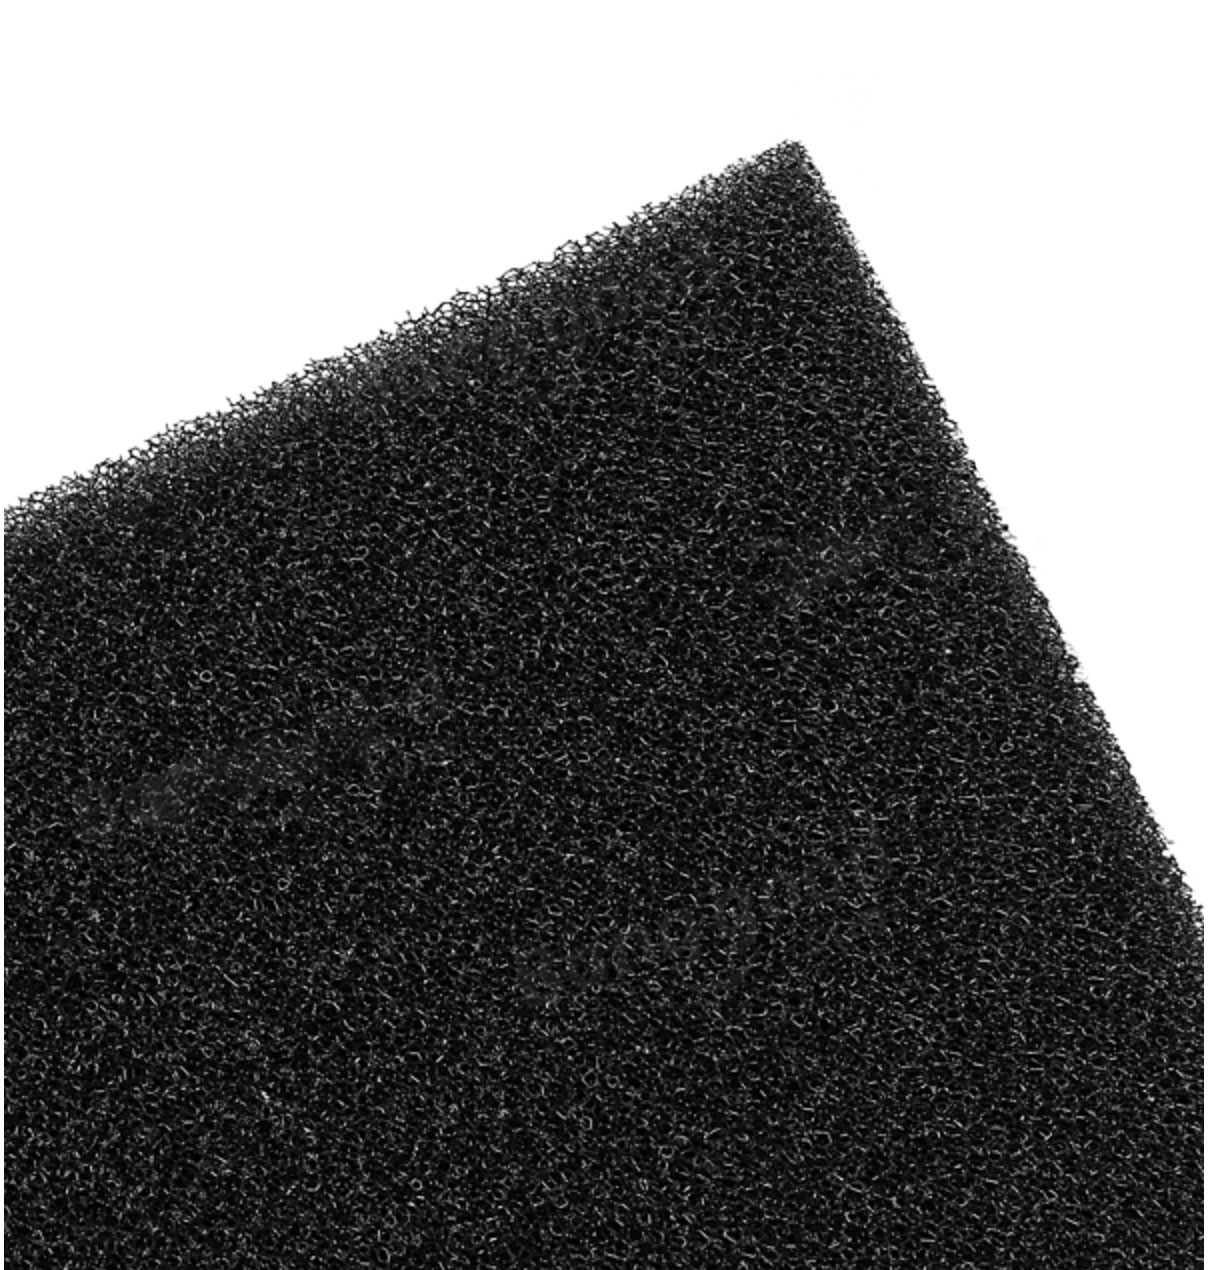 Gąbka - wkład do filtra 30ppi (średnia gradacja)